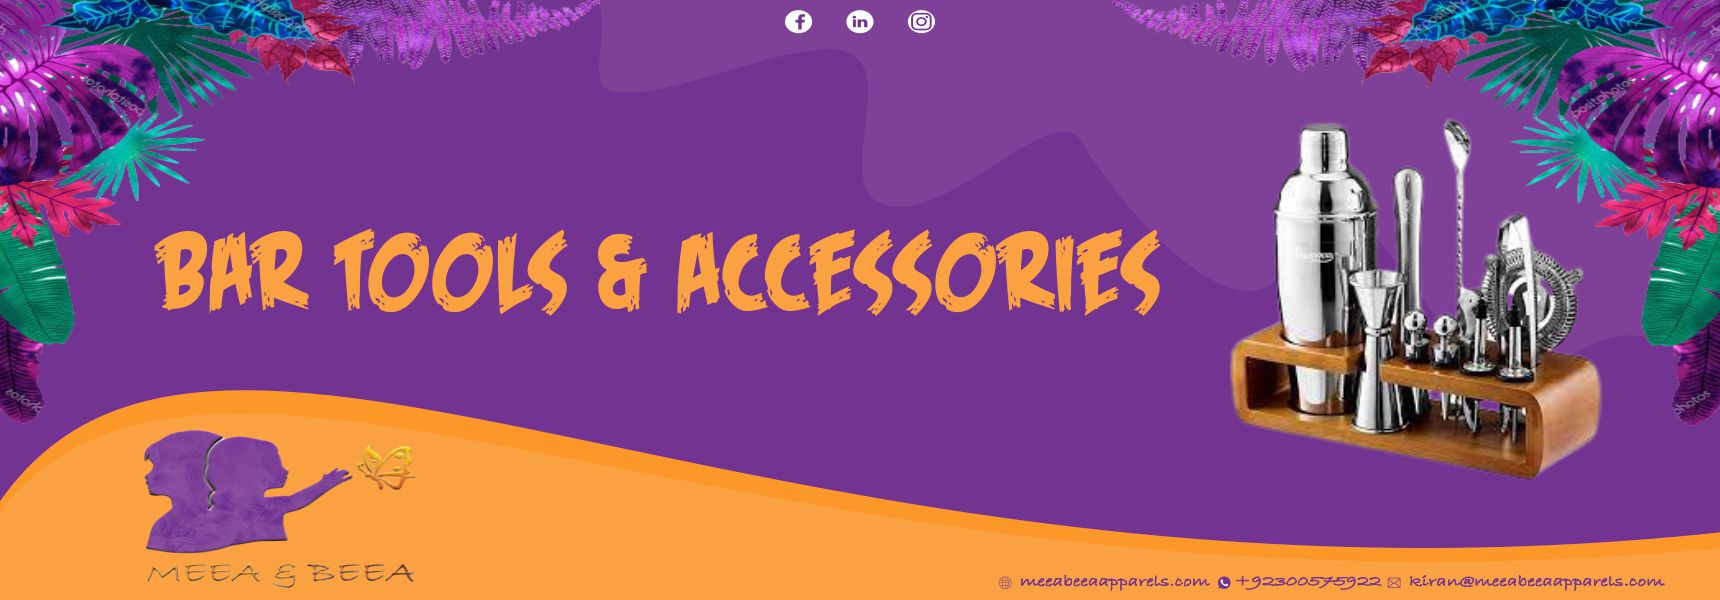 Bar Tools & Accessories